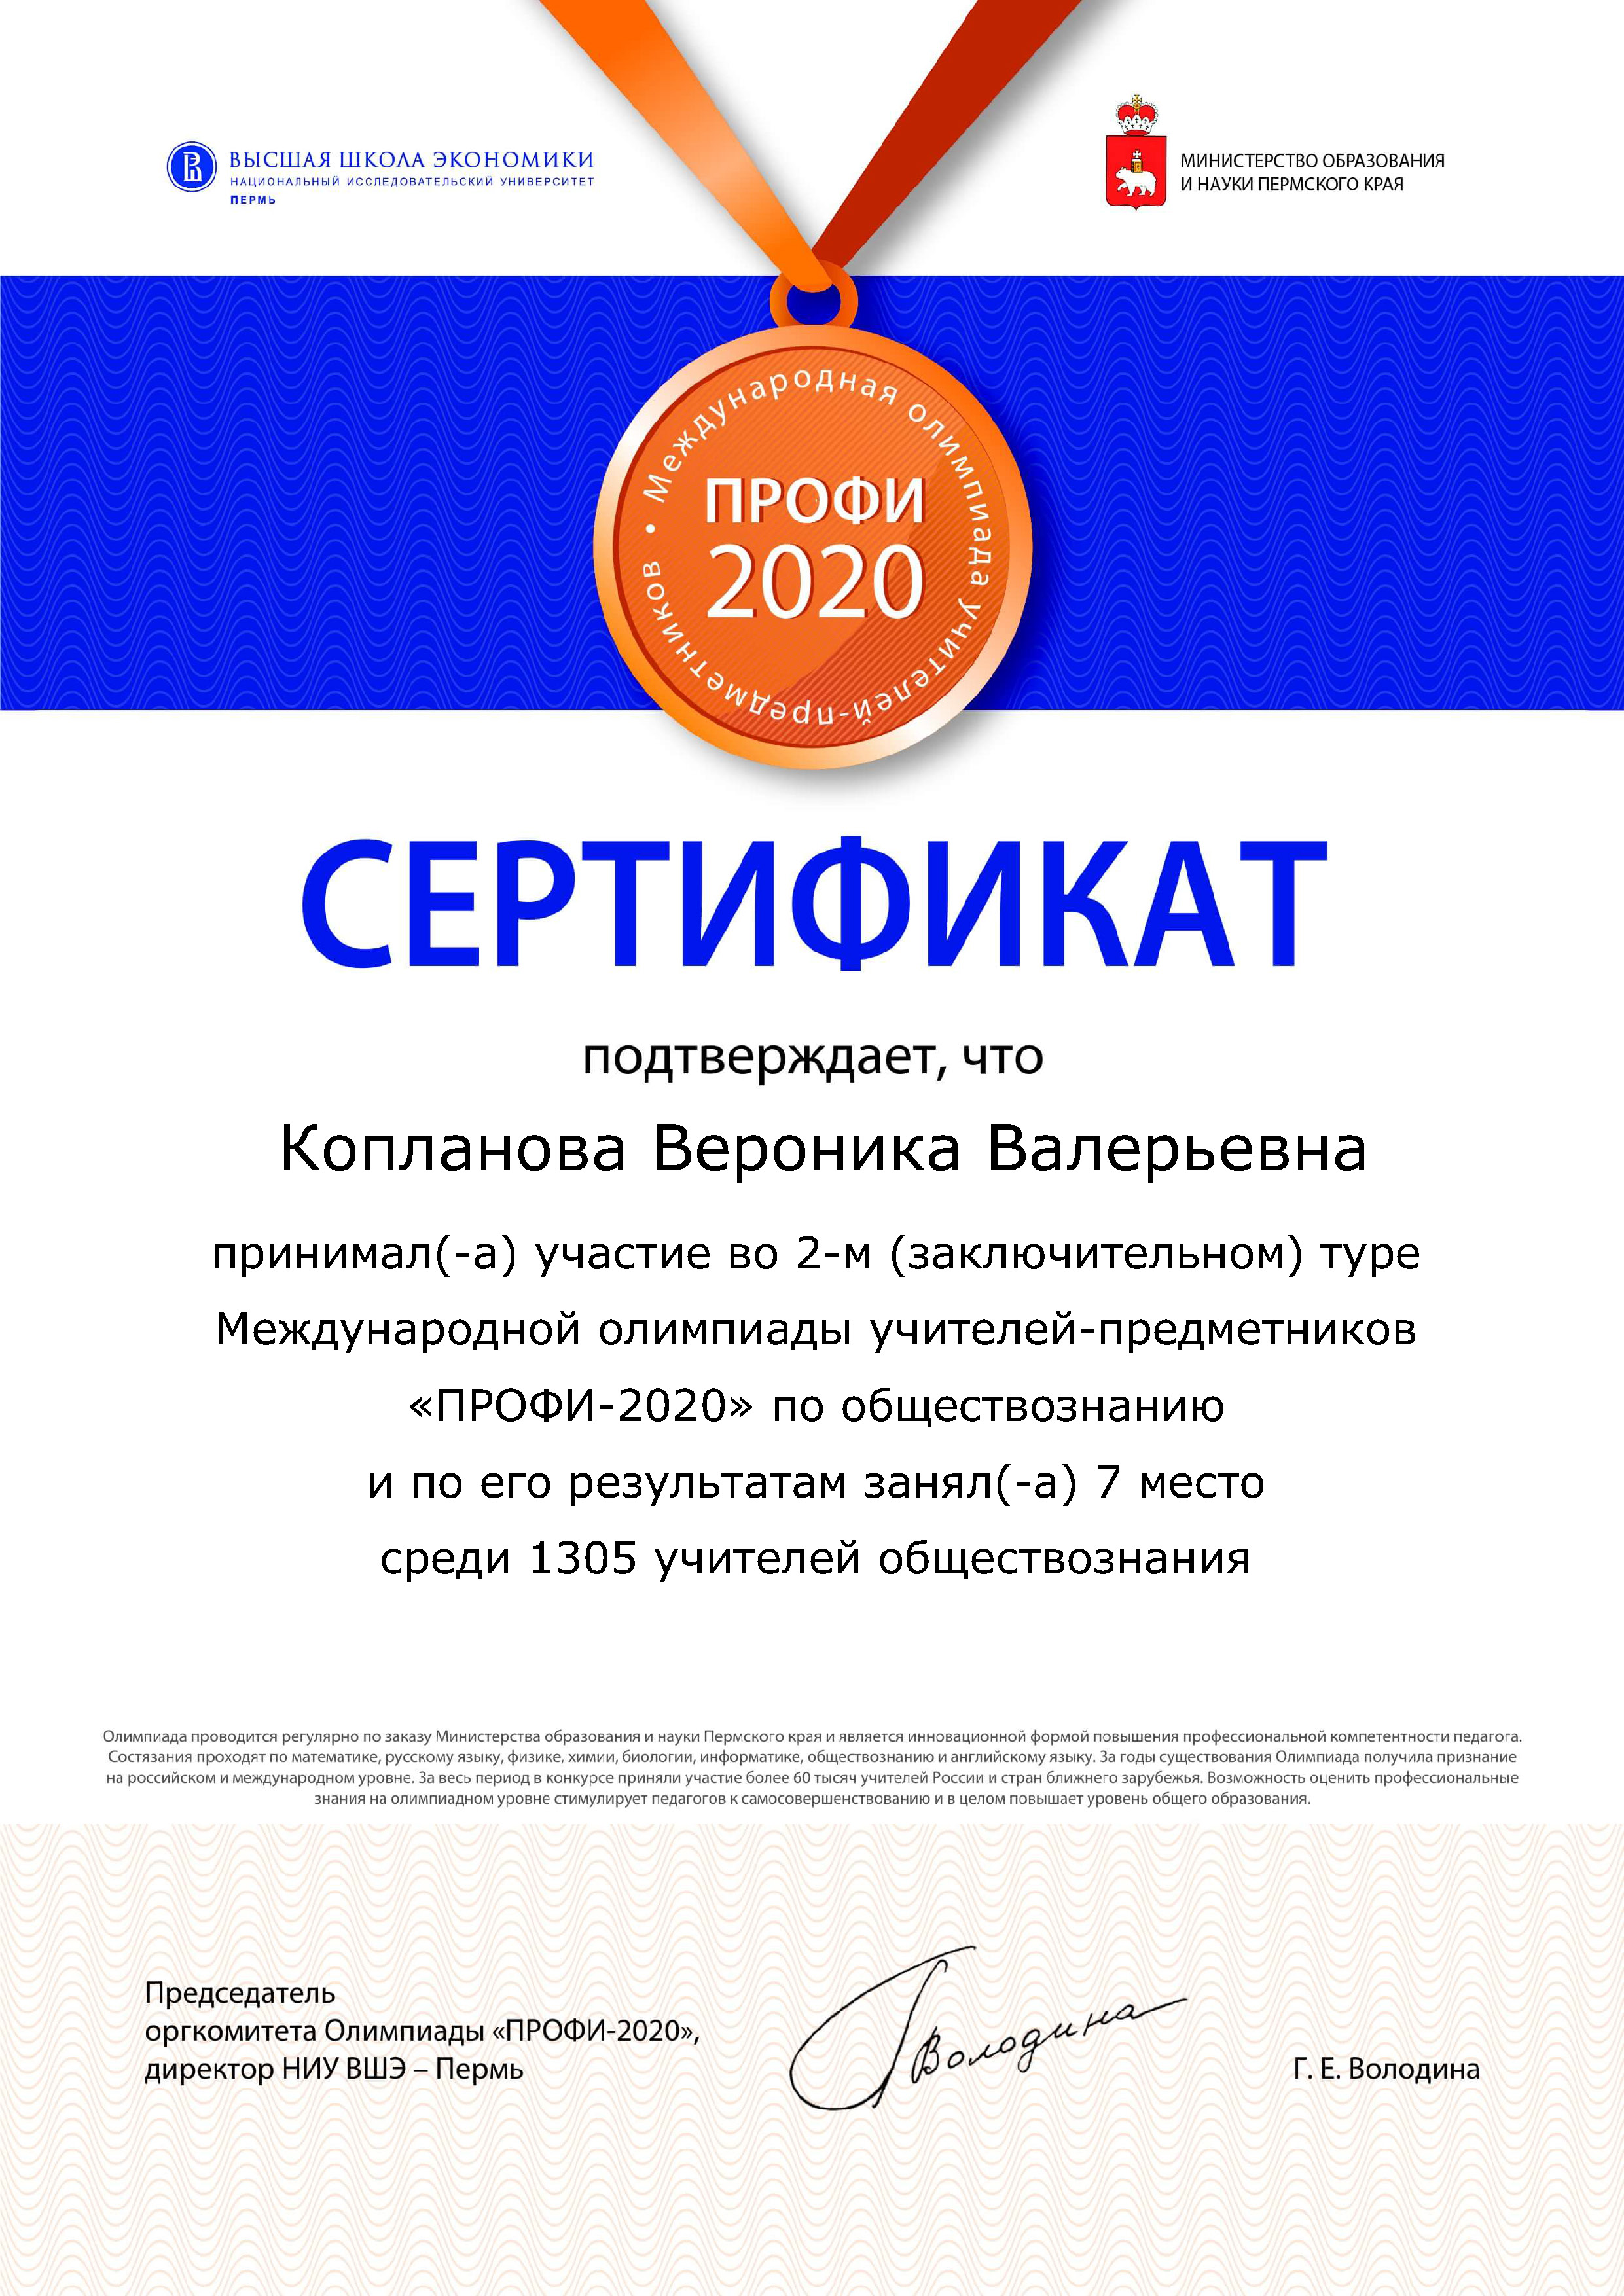 Международная олимпиада учителей-предметников «Профи 2020»